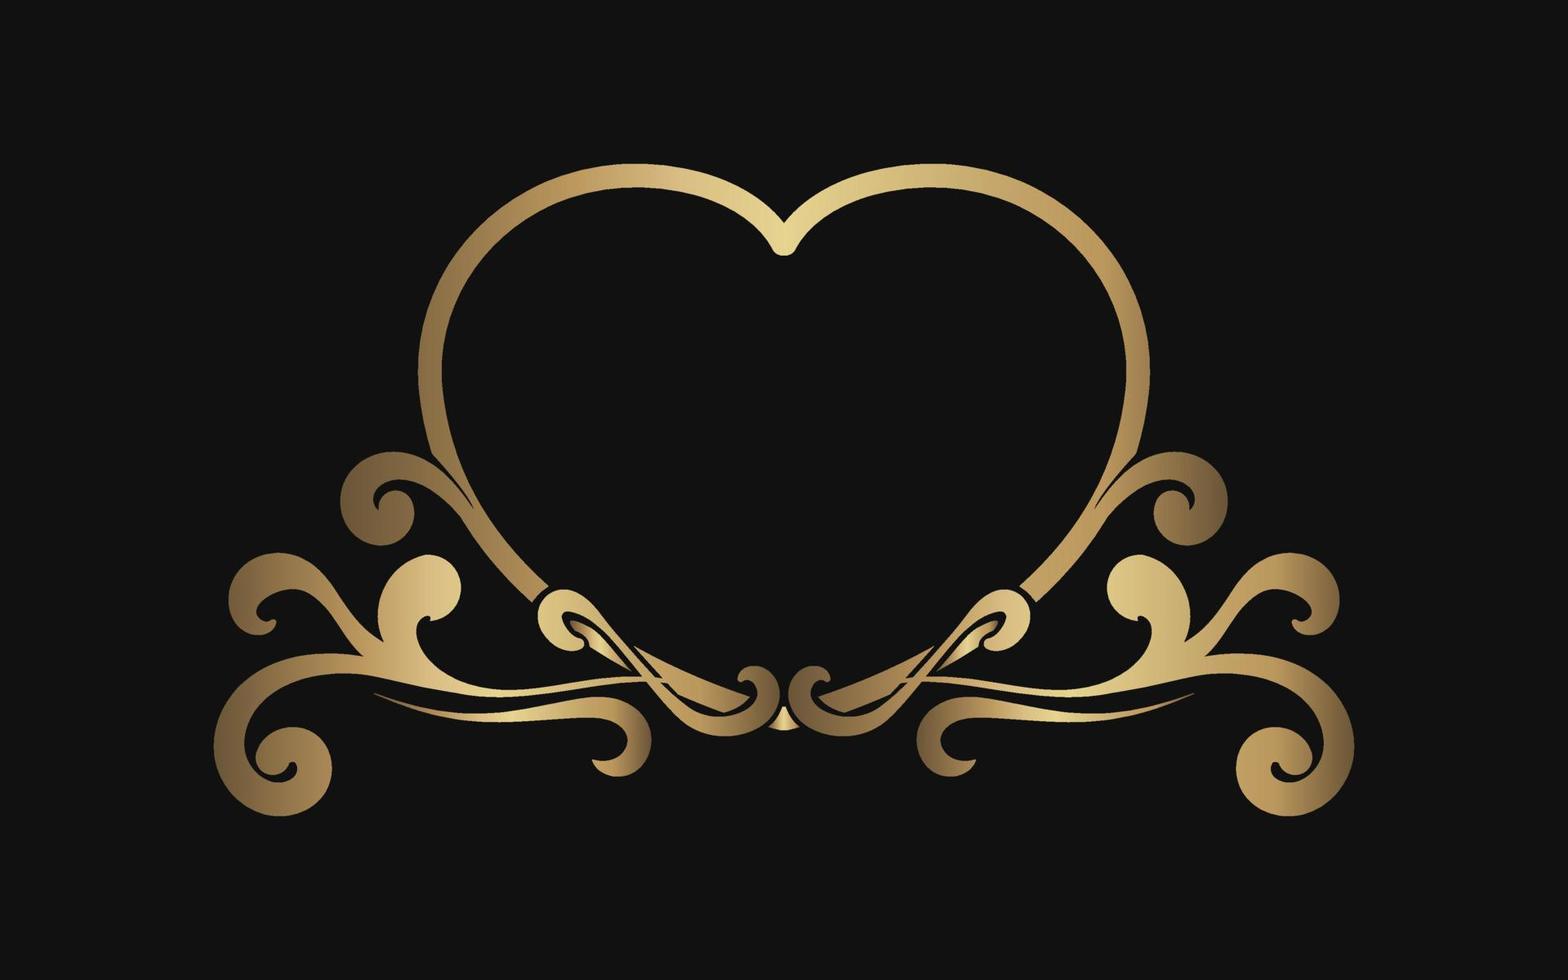 logotipo de borde vintage, forma de corazón, adorno dorado vector